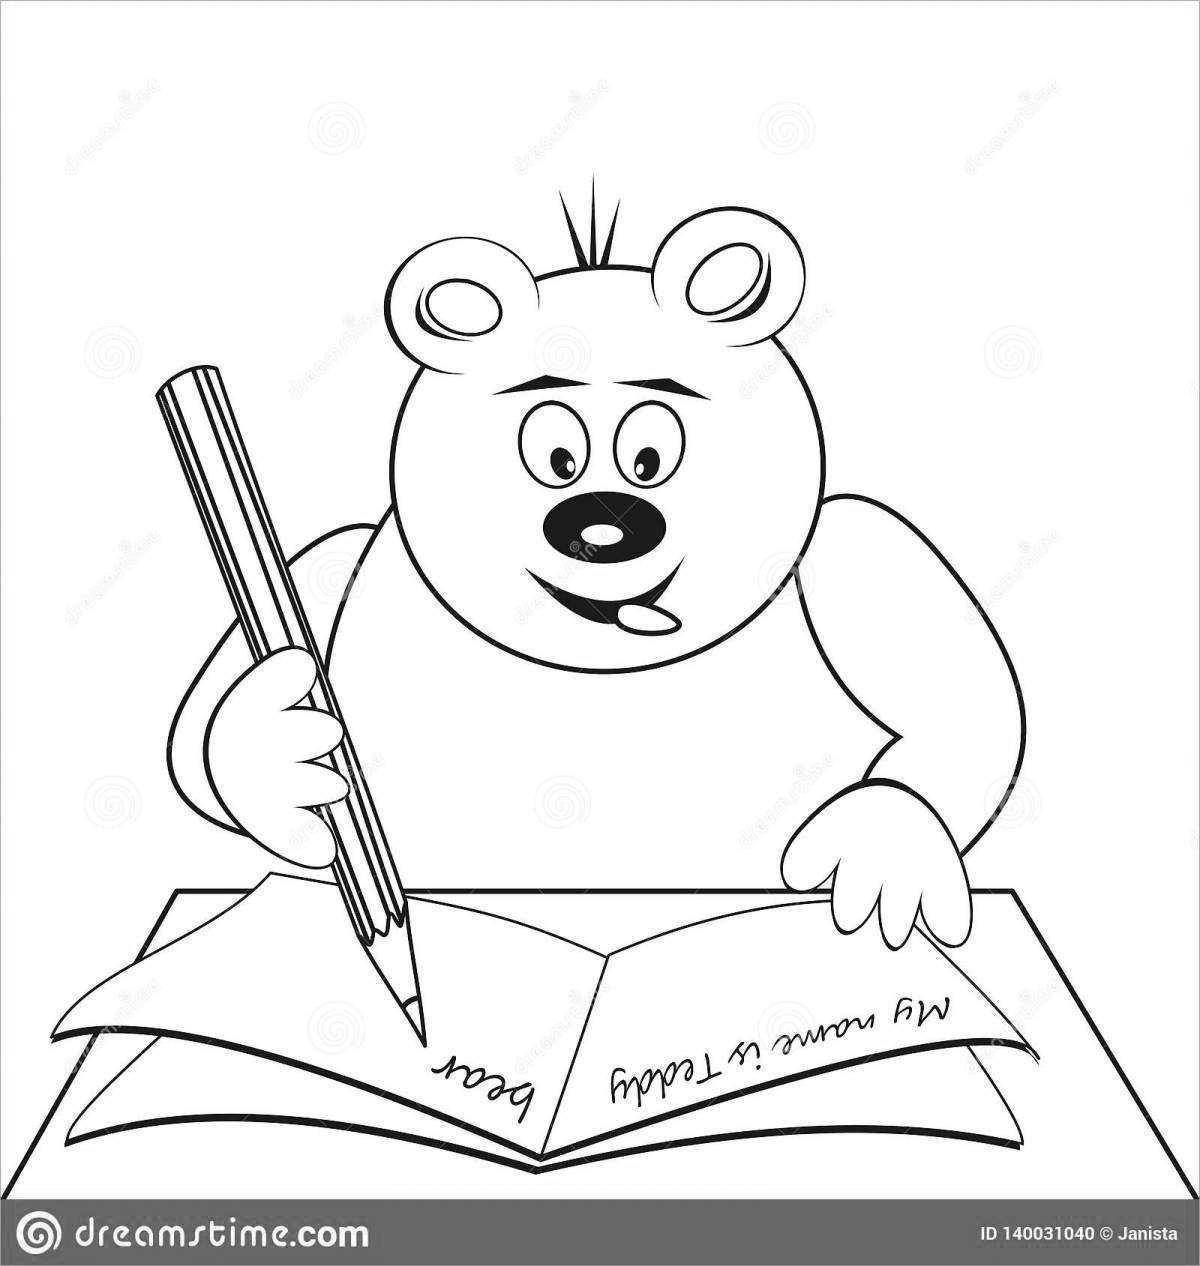 Fun coloring bears